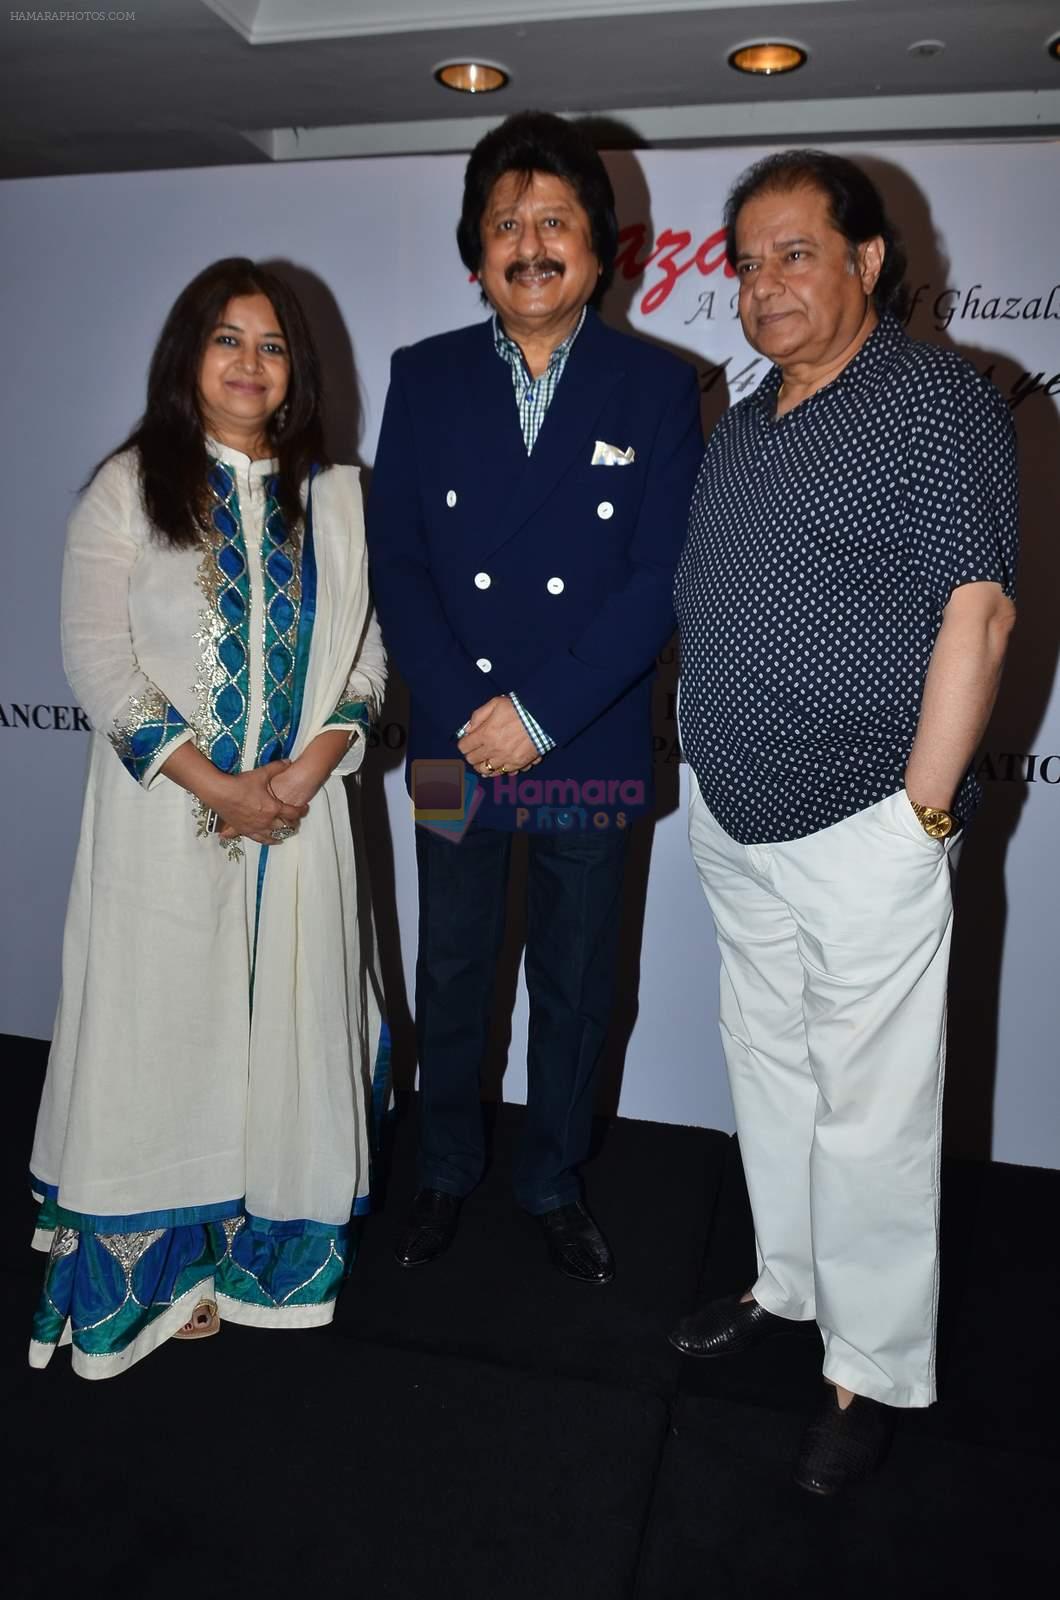 Pankaj Udhas, Anup jalota at Khazana festival in Trident, Mumbai on 15th july 2015